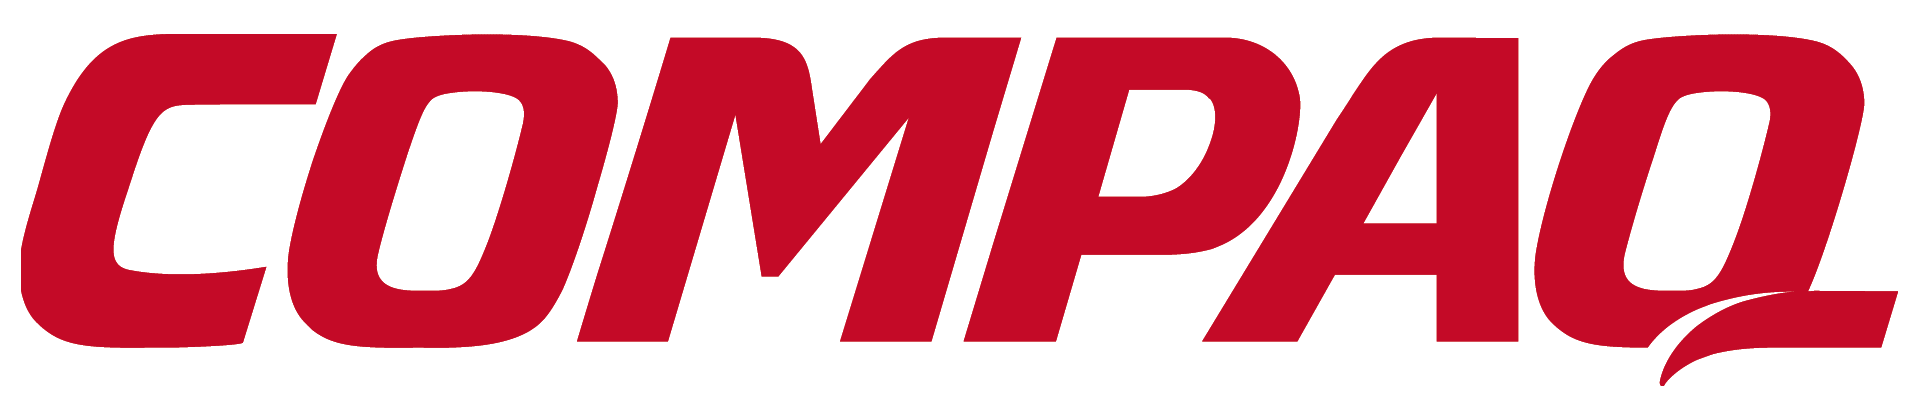 HP Compaq Logo - Compaq Logos